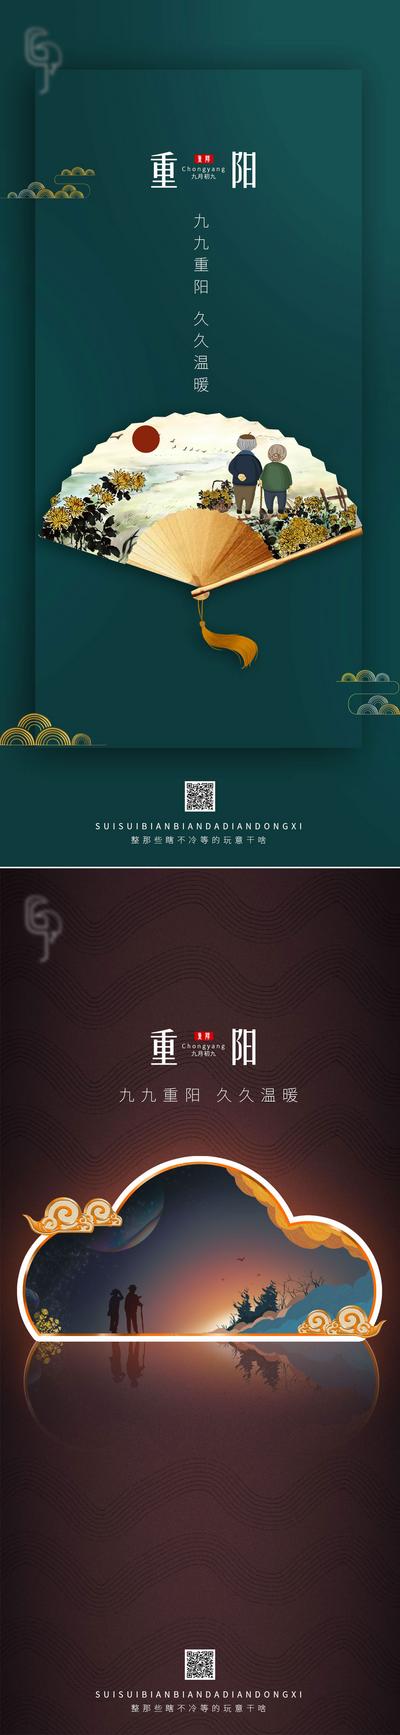 南门网 海报  房地产  系列   重阳节   传统节日  复古 大气  折扇